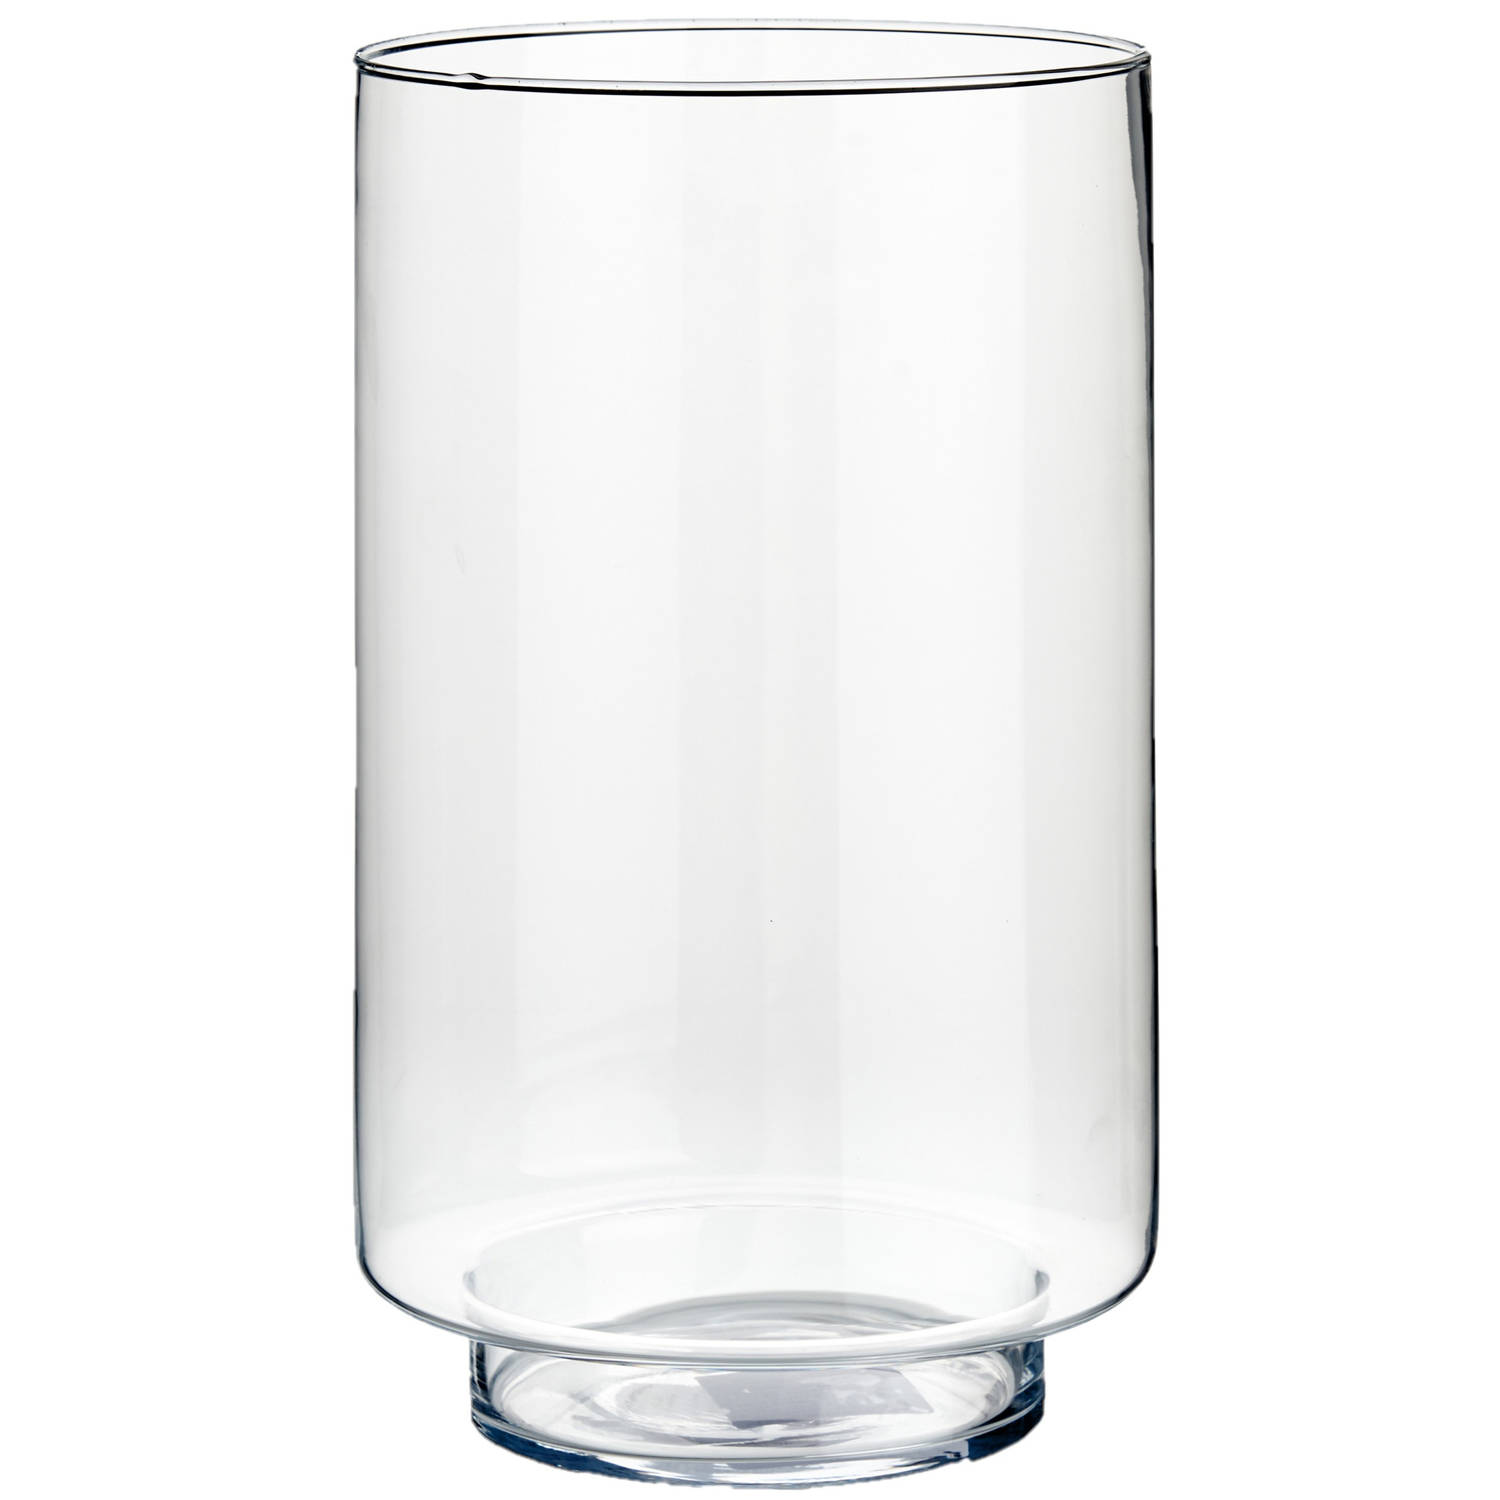 Bloemenvaas van glas 18 x 30 cm - Vazen